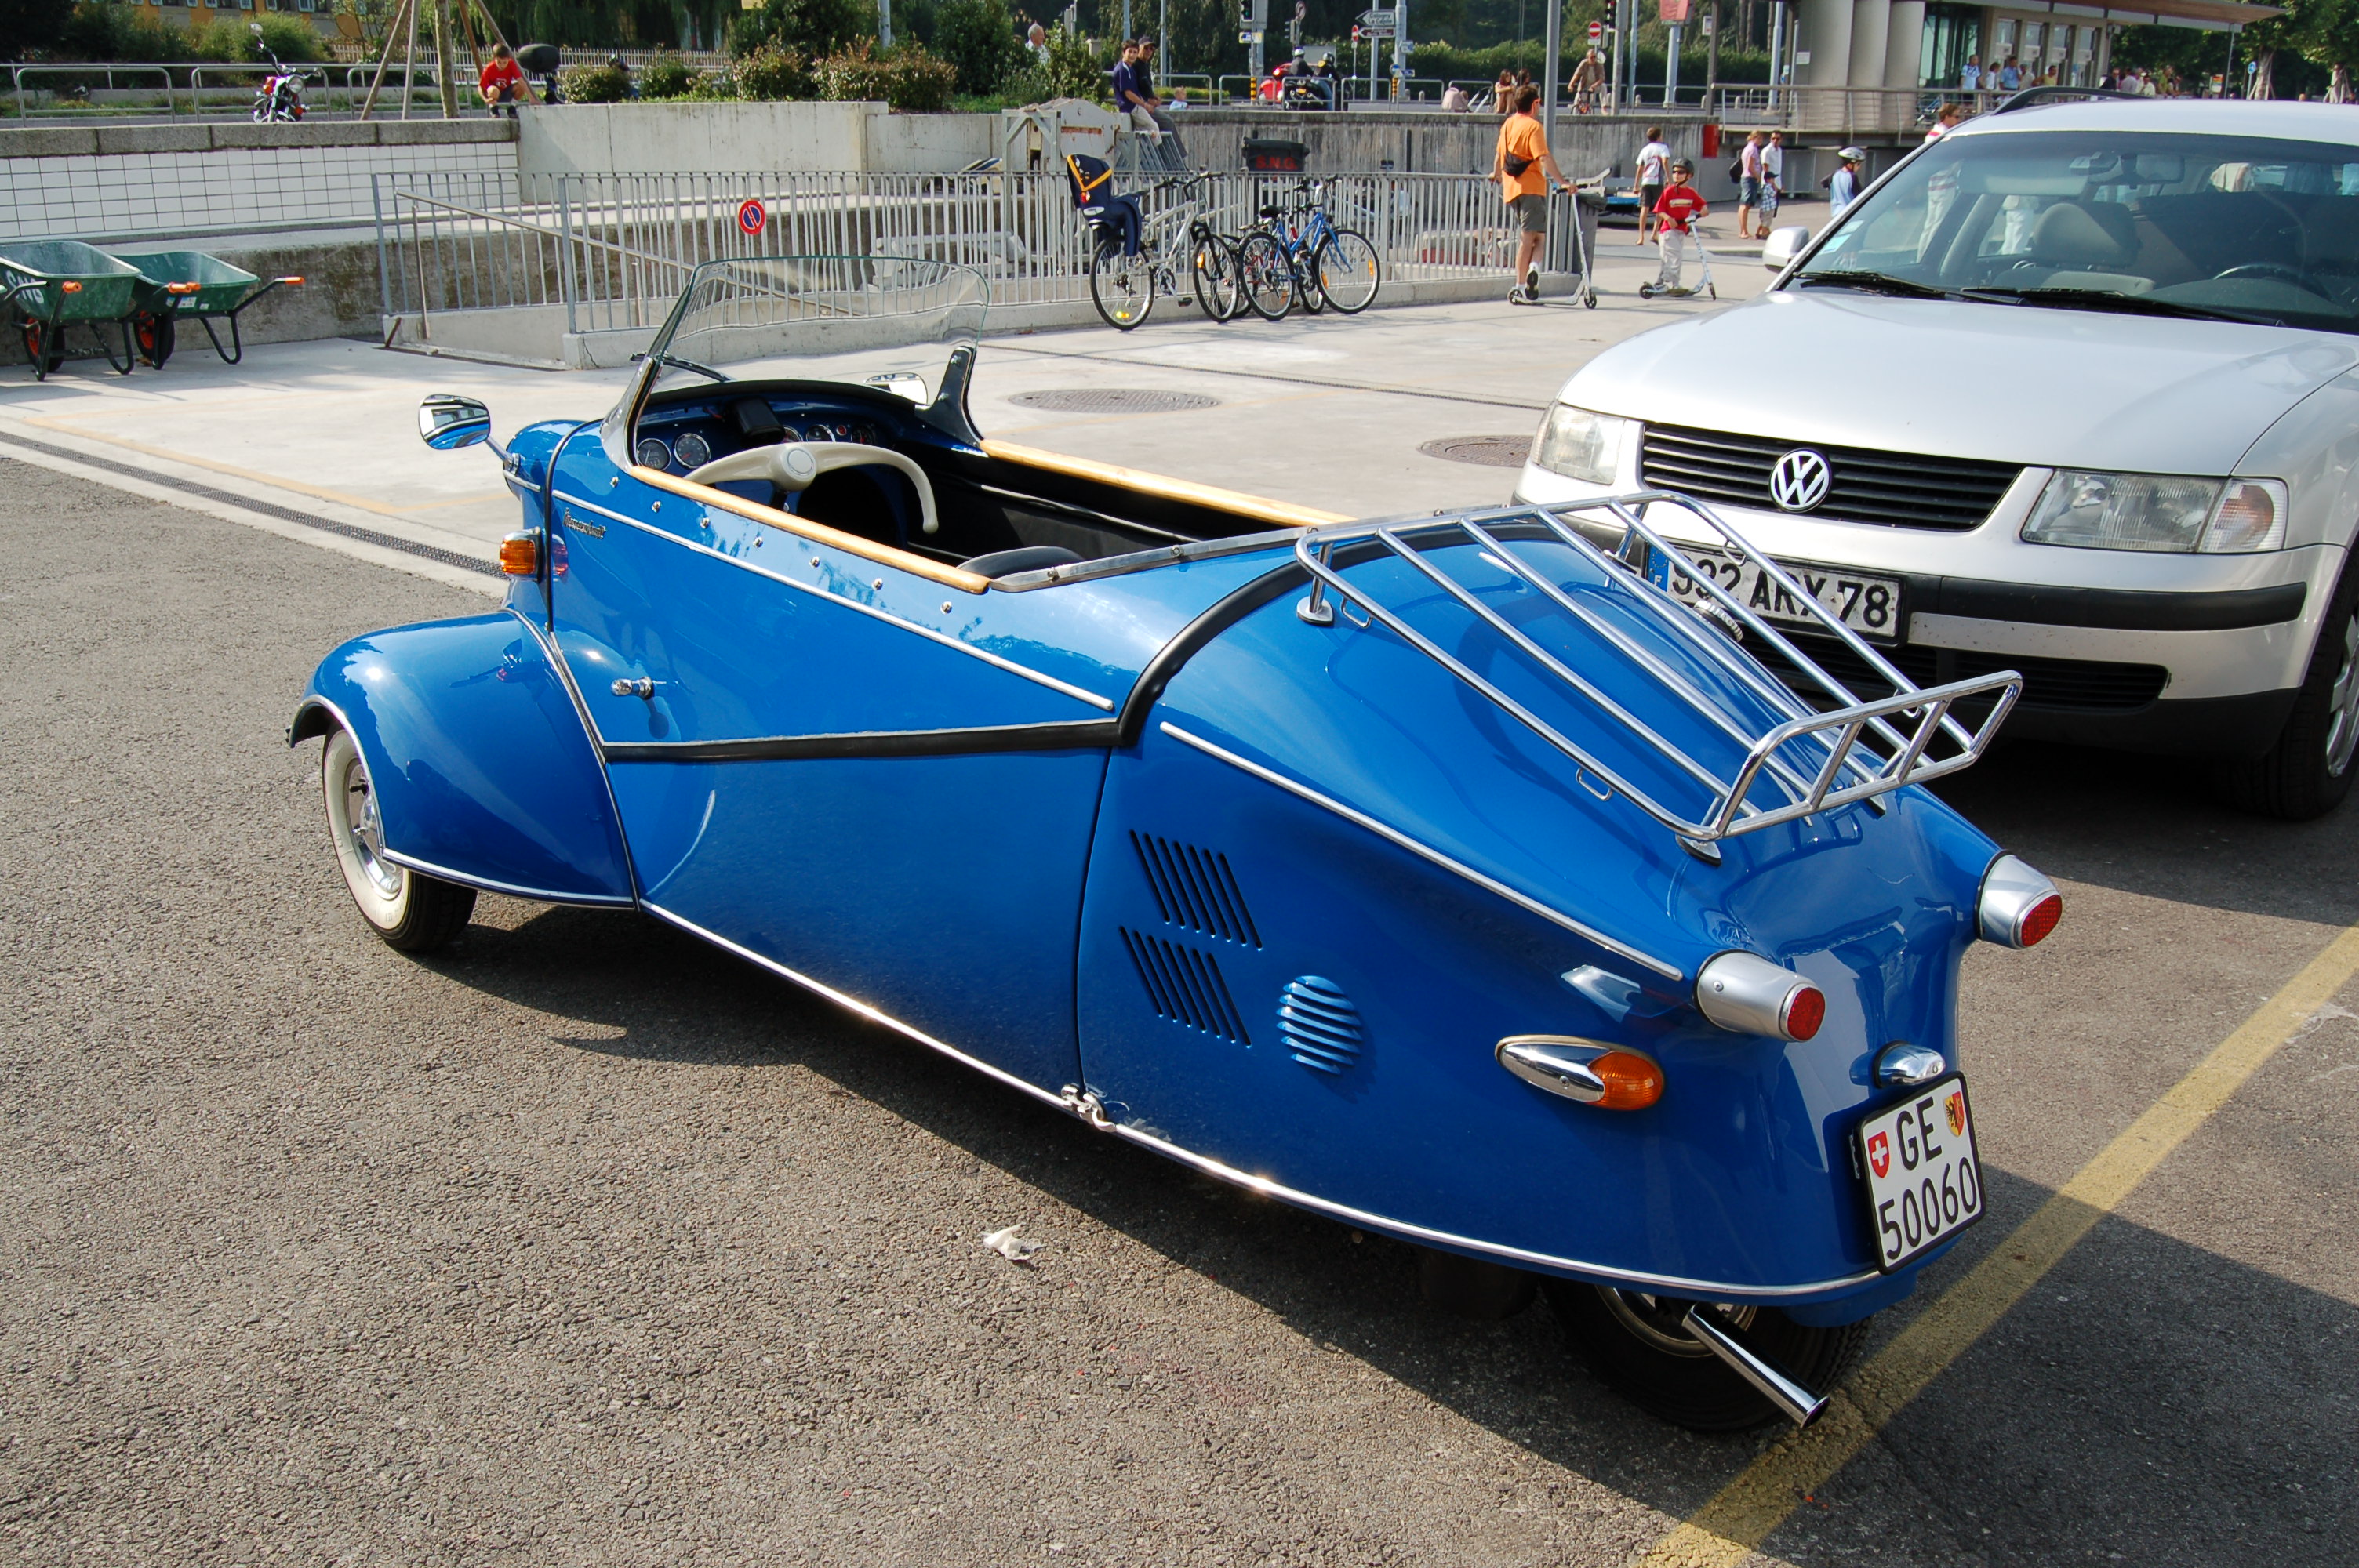 Messerschmitt Geneva 763